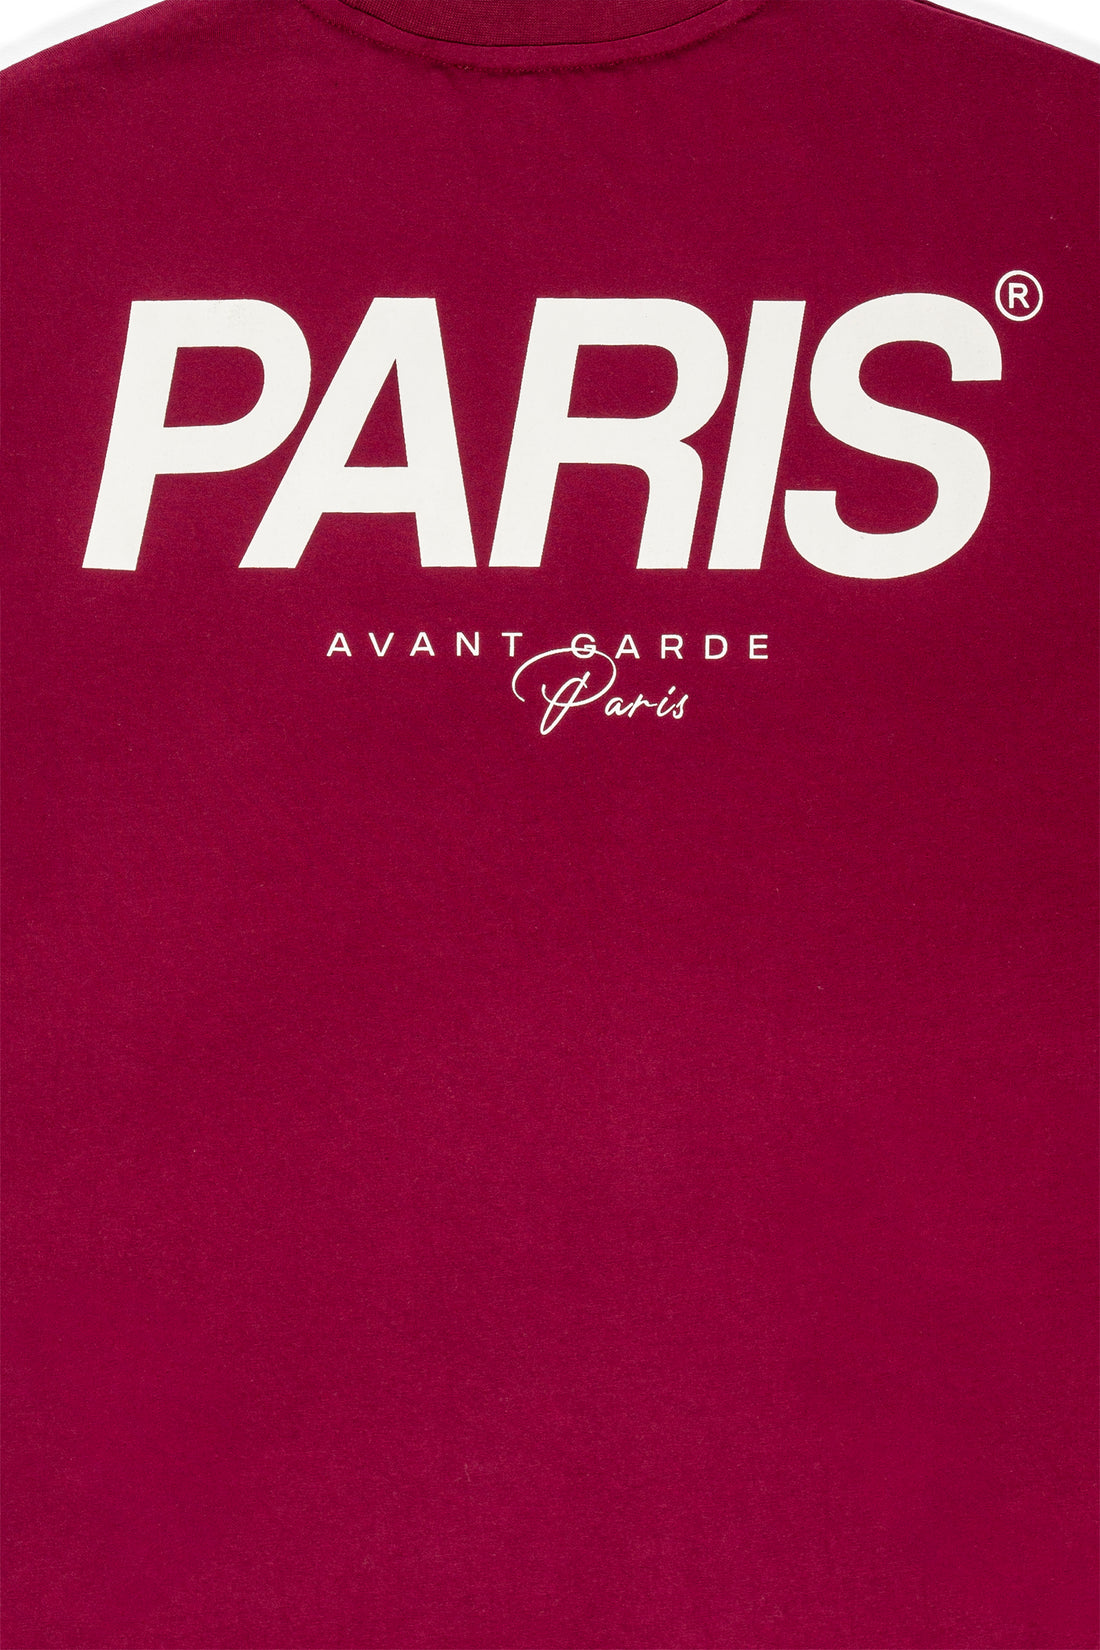 Parisien T-Shirt in Burgundy